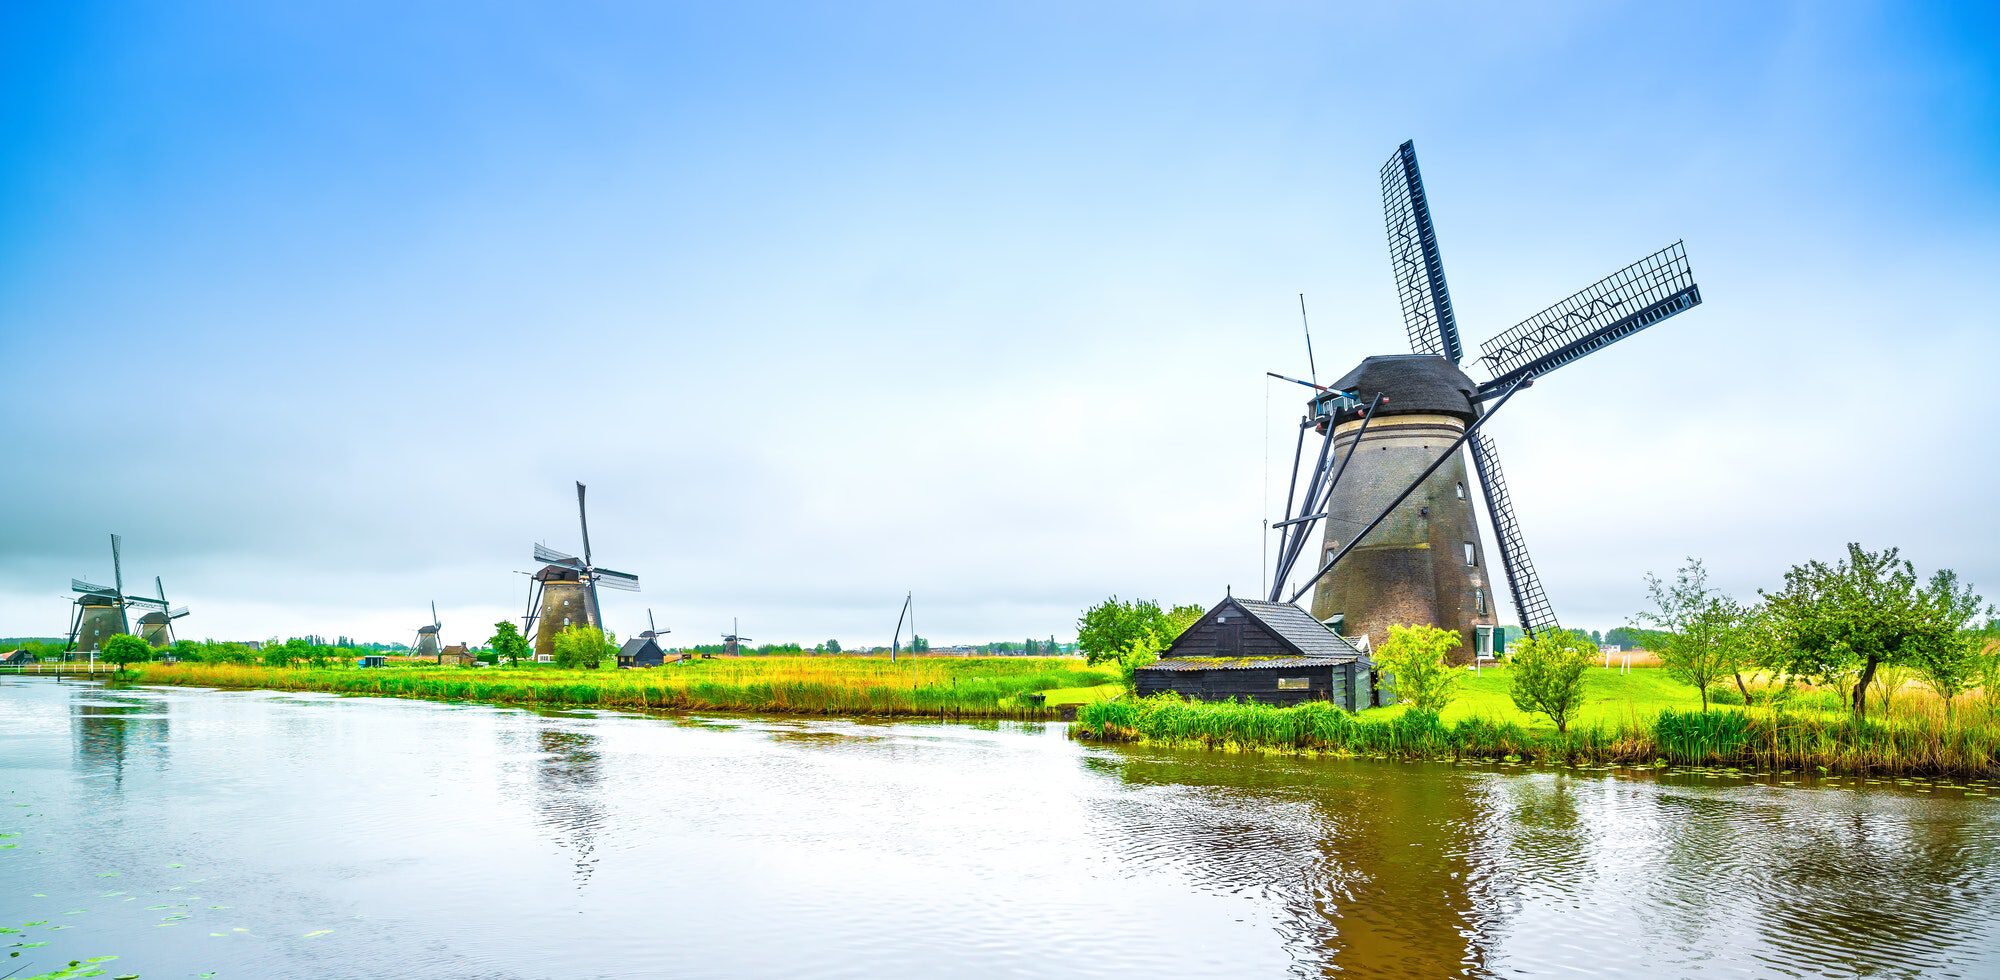 Windmühlen und Gracht in Kinderdijk, Holland oder Niederlande. Unesco-Website